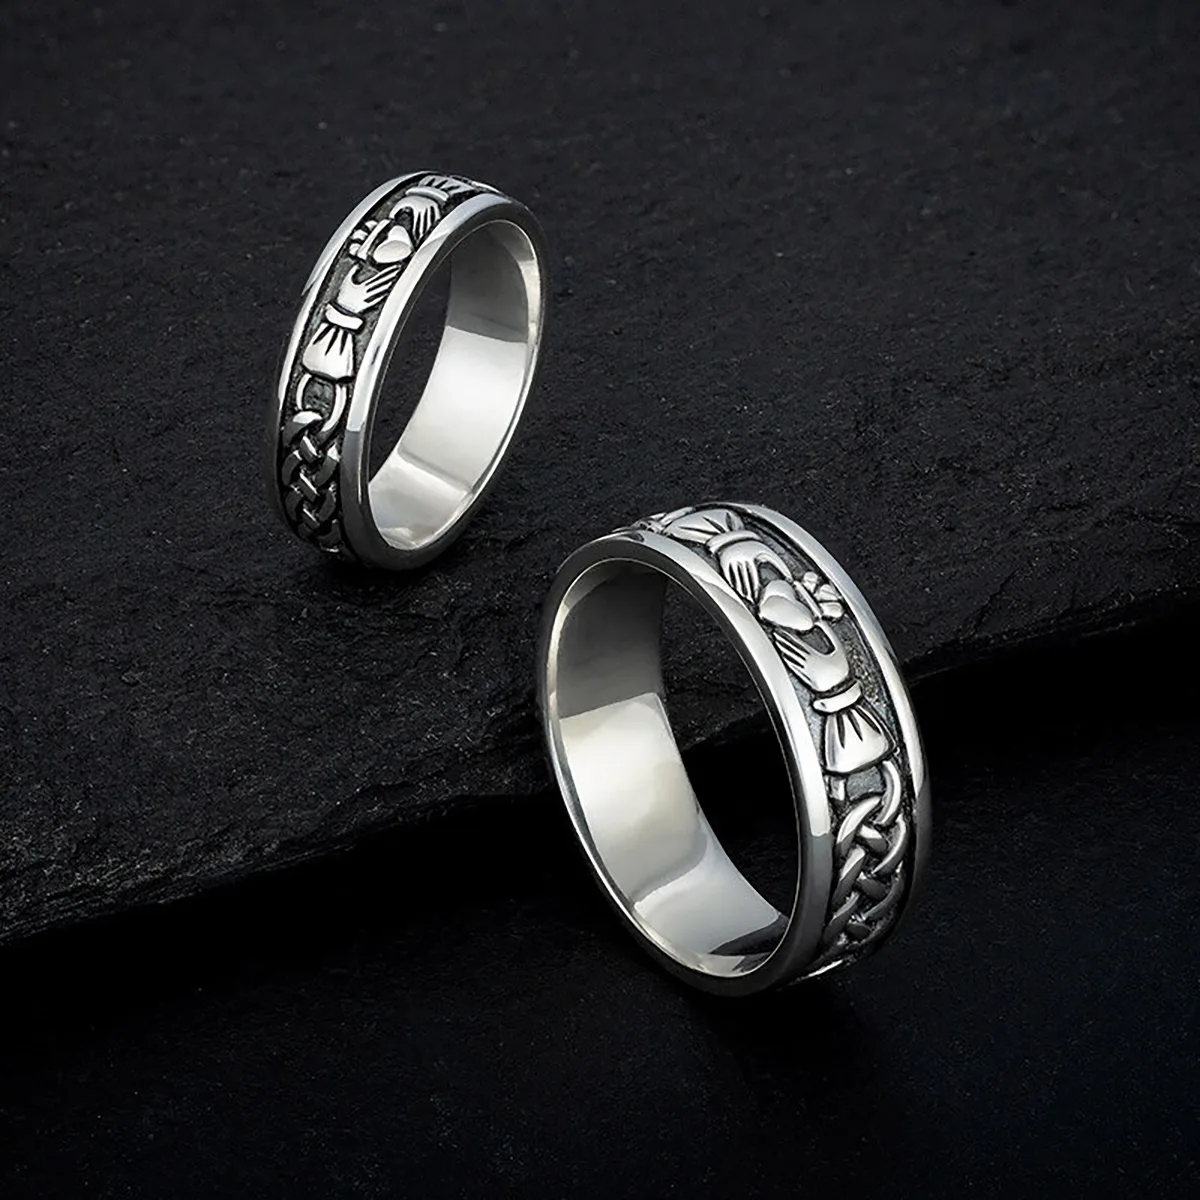 Herren Claddagh Ring aus Sterling Silber - handgefertigt in Irland